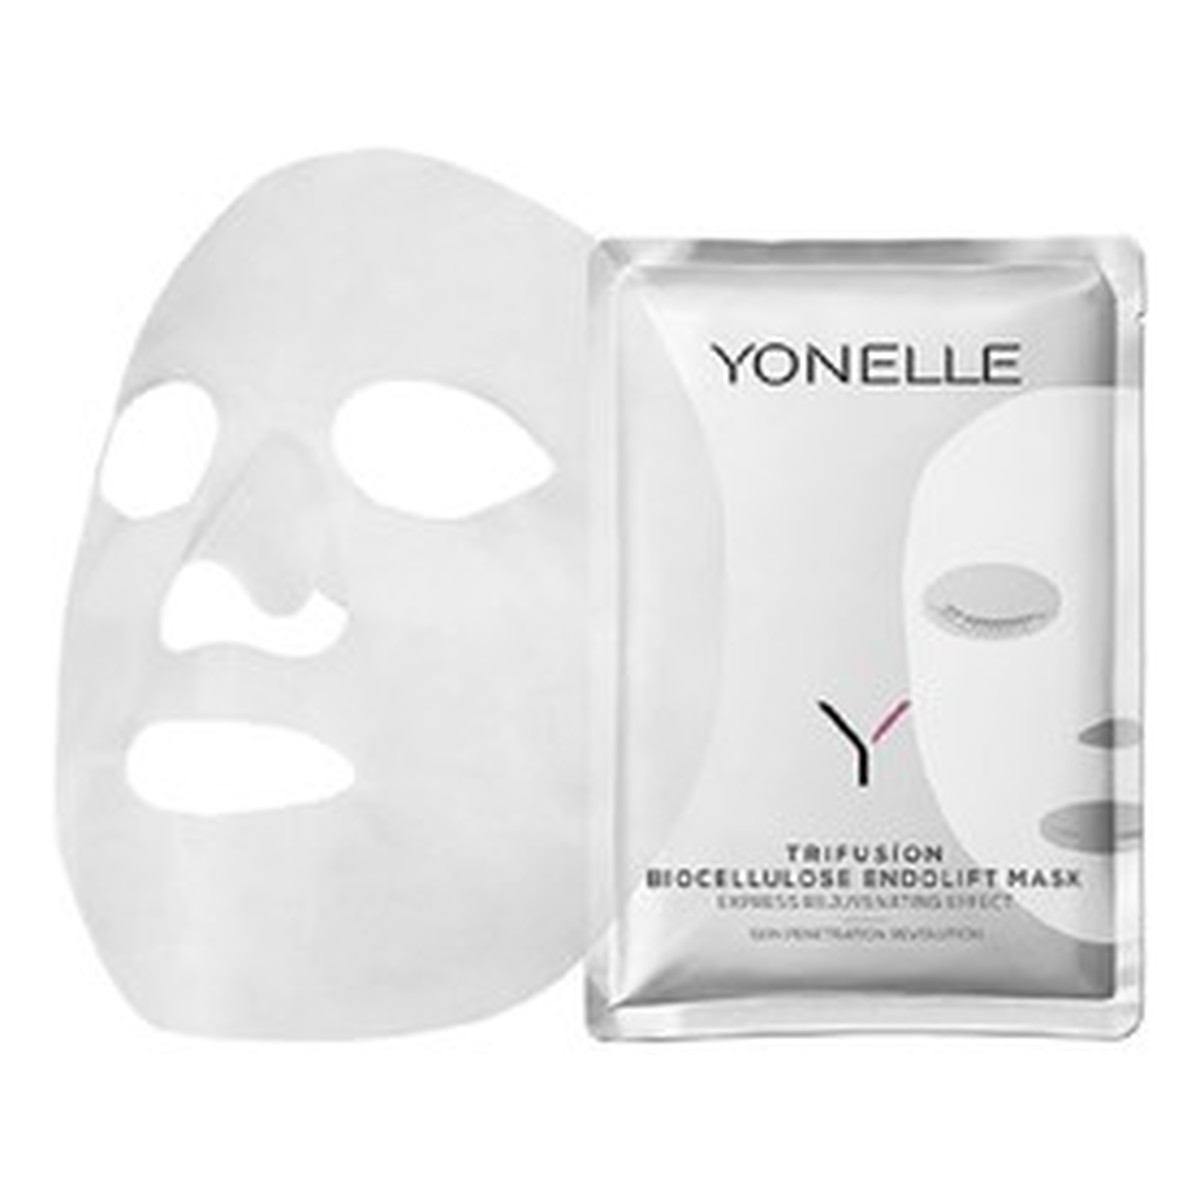 Yonelle Trifusion Biocellulose Endolift Mask biocelulozowa maska endoliftingująca 1szt